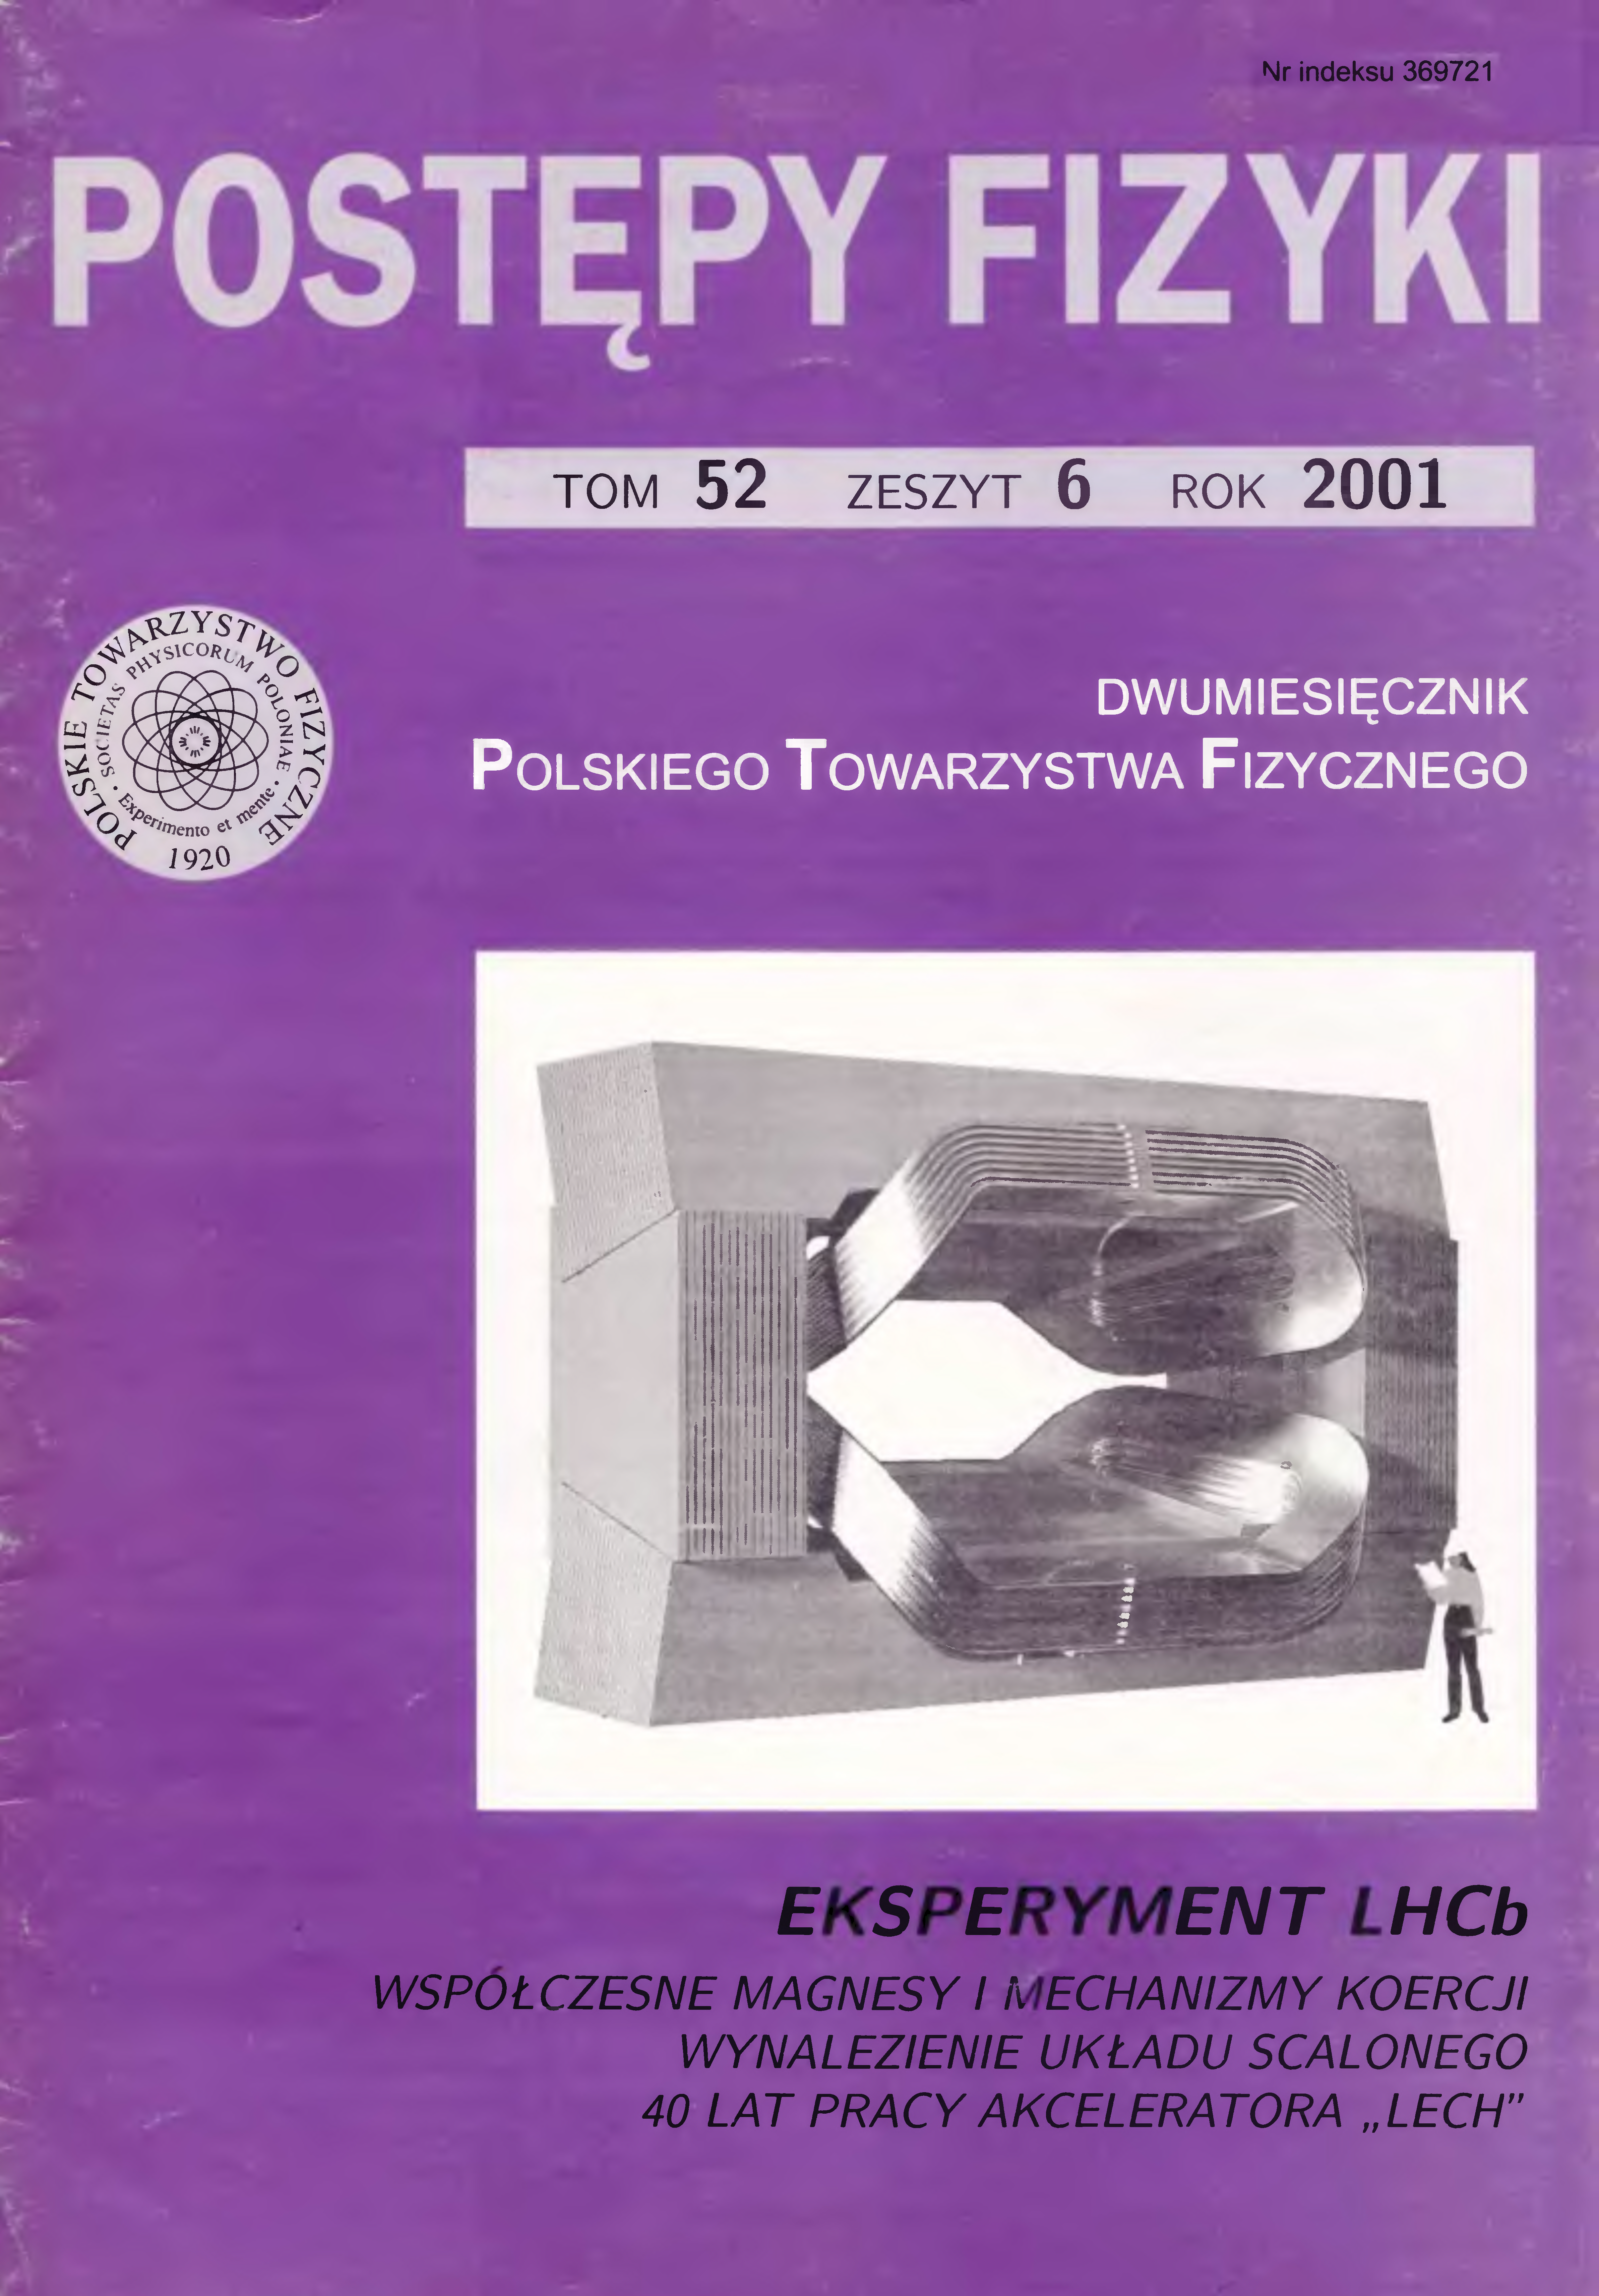 Postępy Fizyki 52 (6) 2001